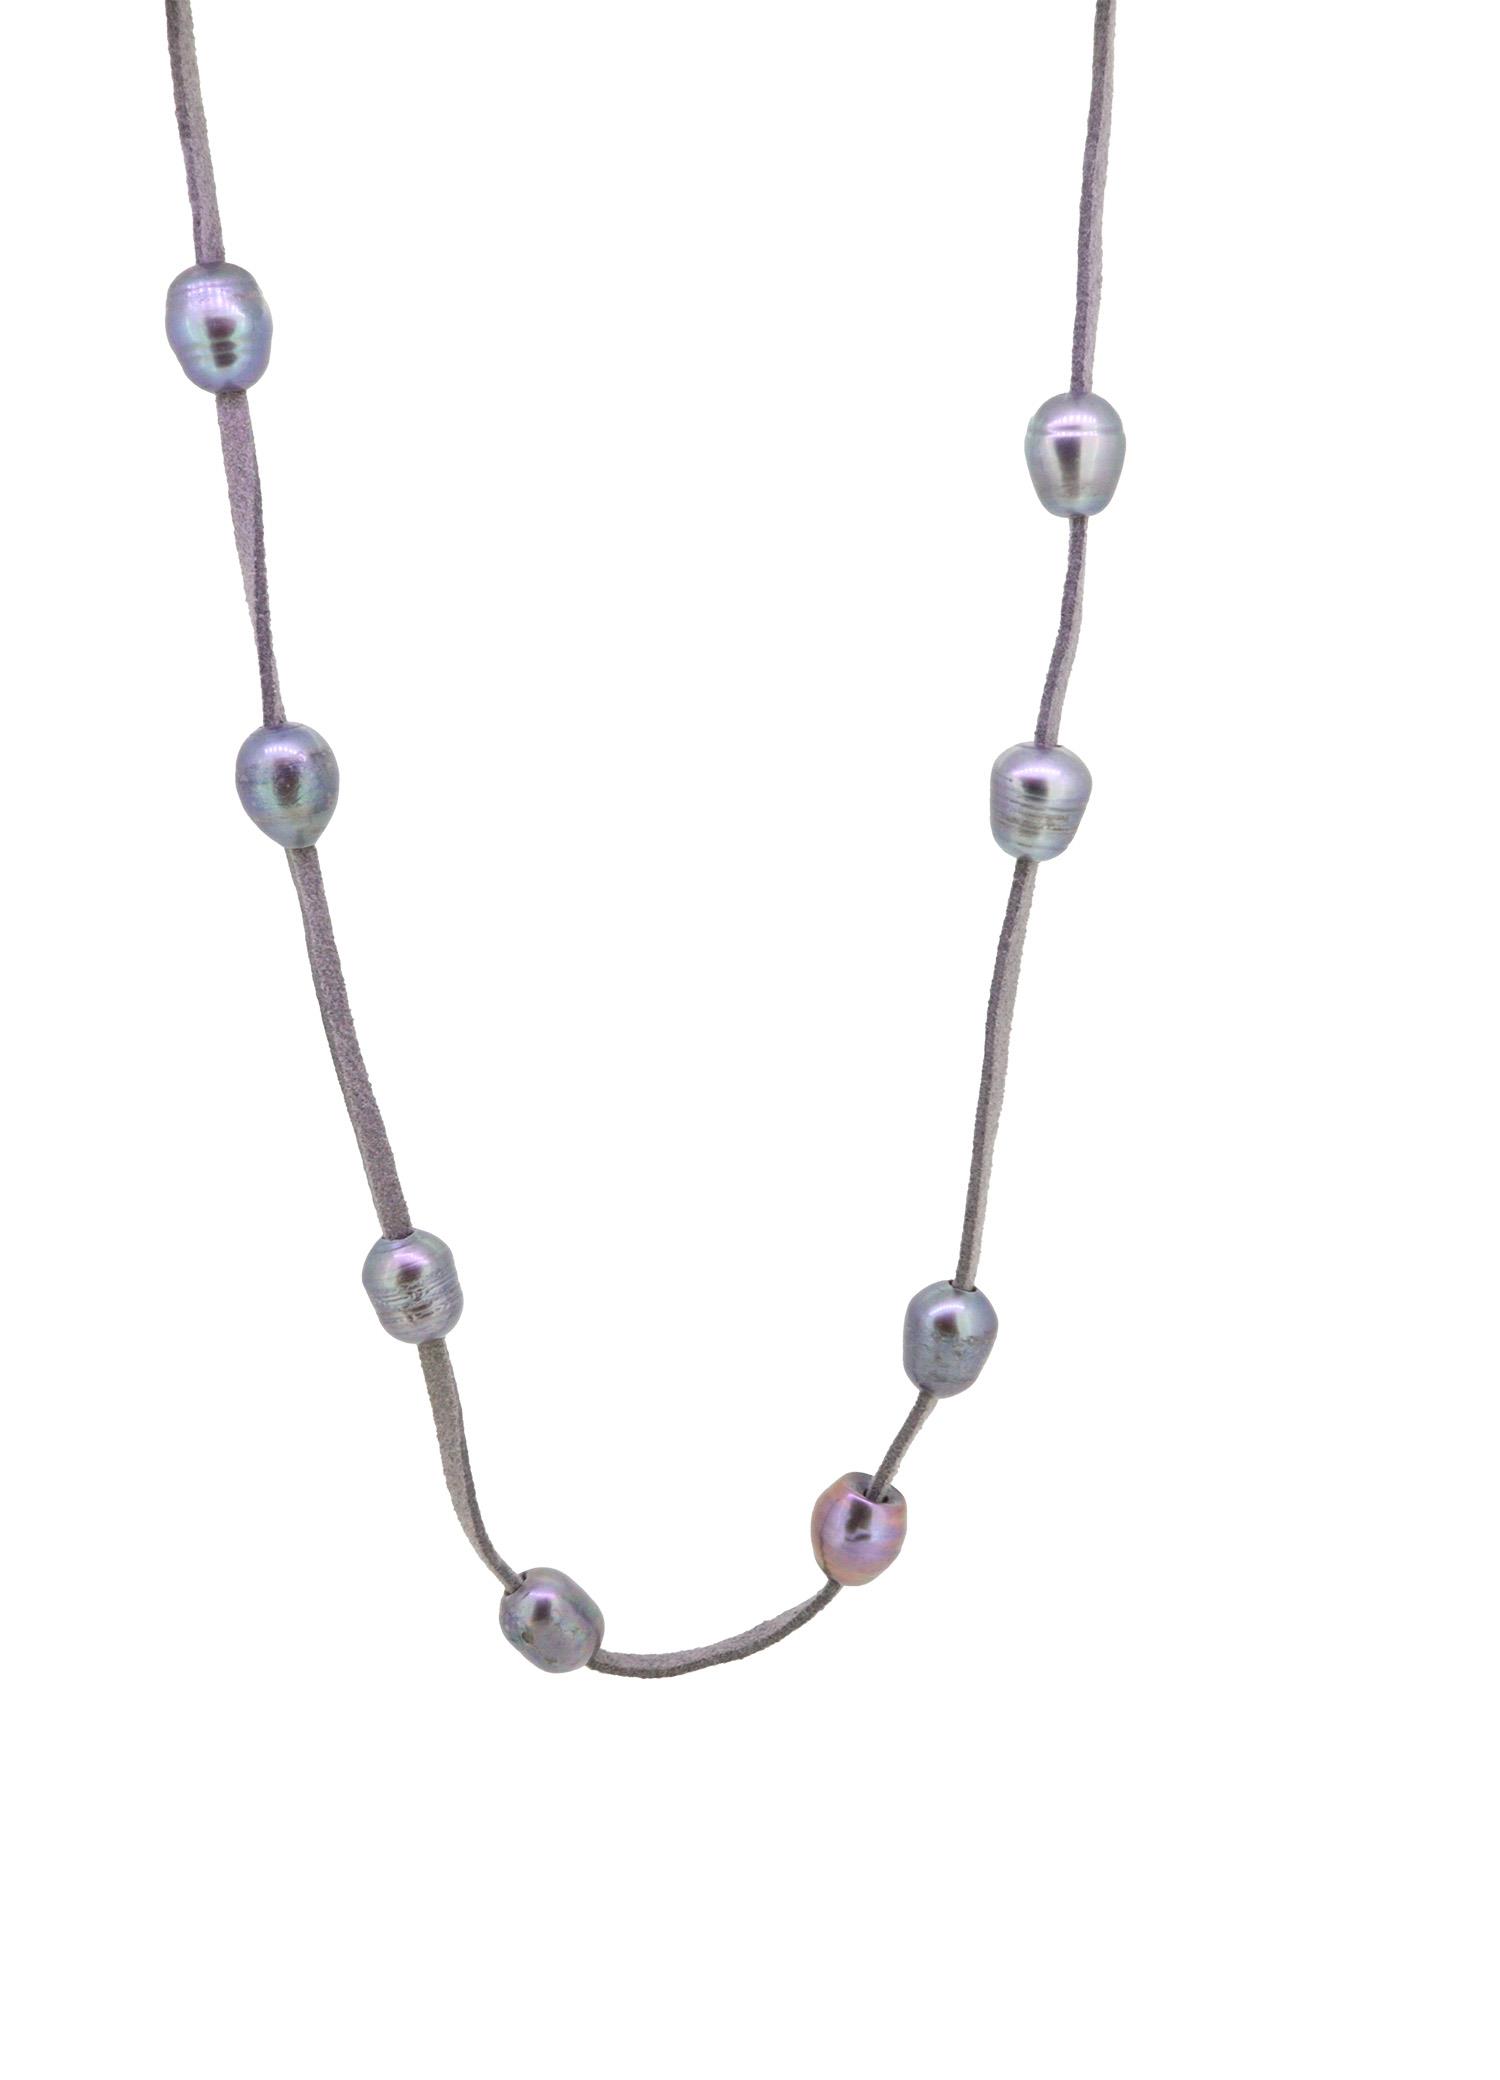 Halskette mit Tahiti Perlen auf Lederschnur - GalerieVoigt - 123dare11-1